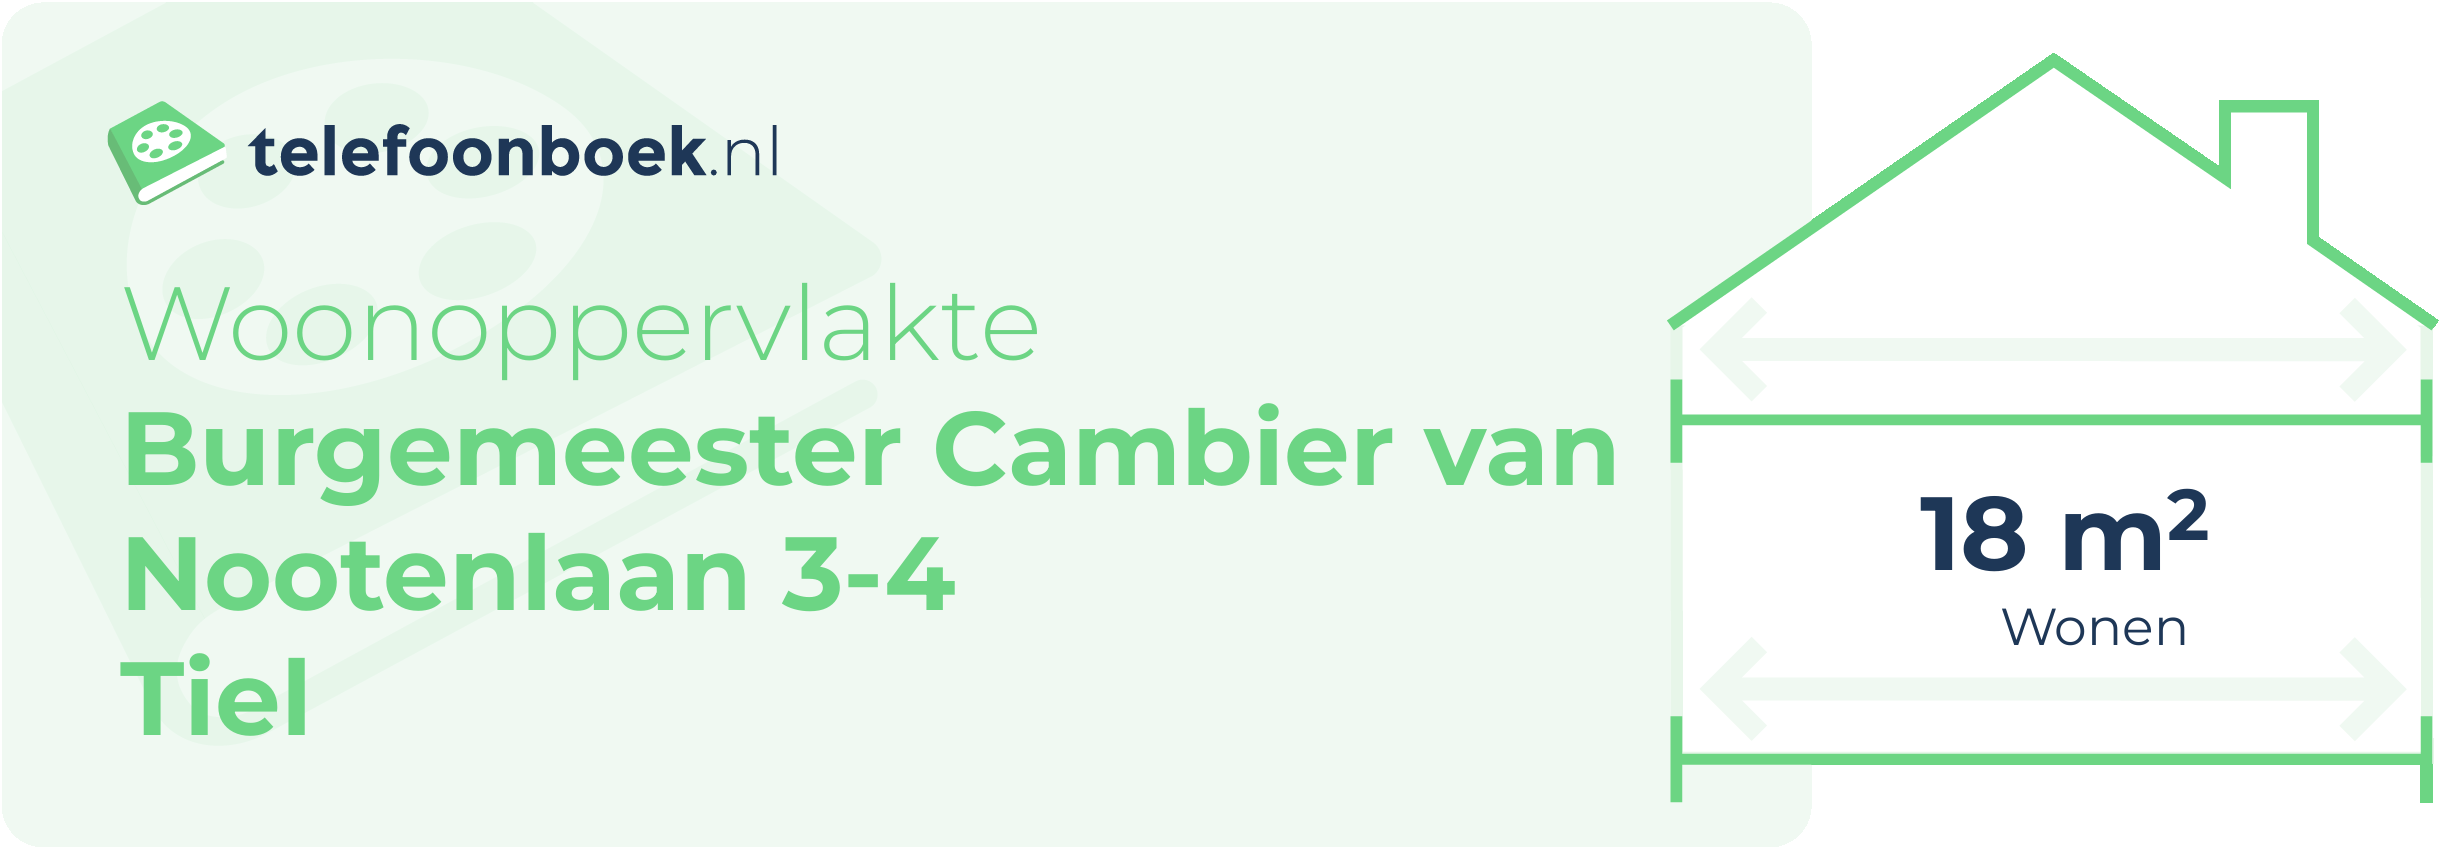 Woonoppervlakte Burgemeester Cambier Van Nootenlaan 3-4 Tiel